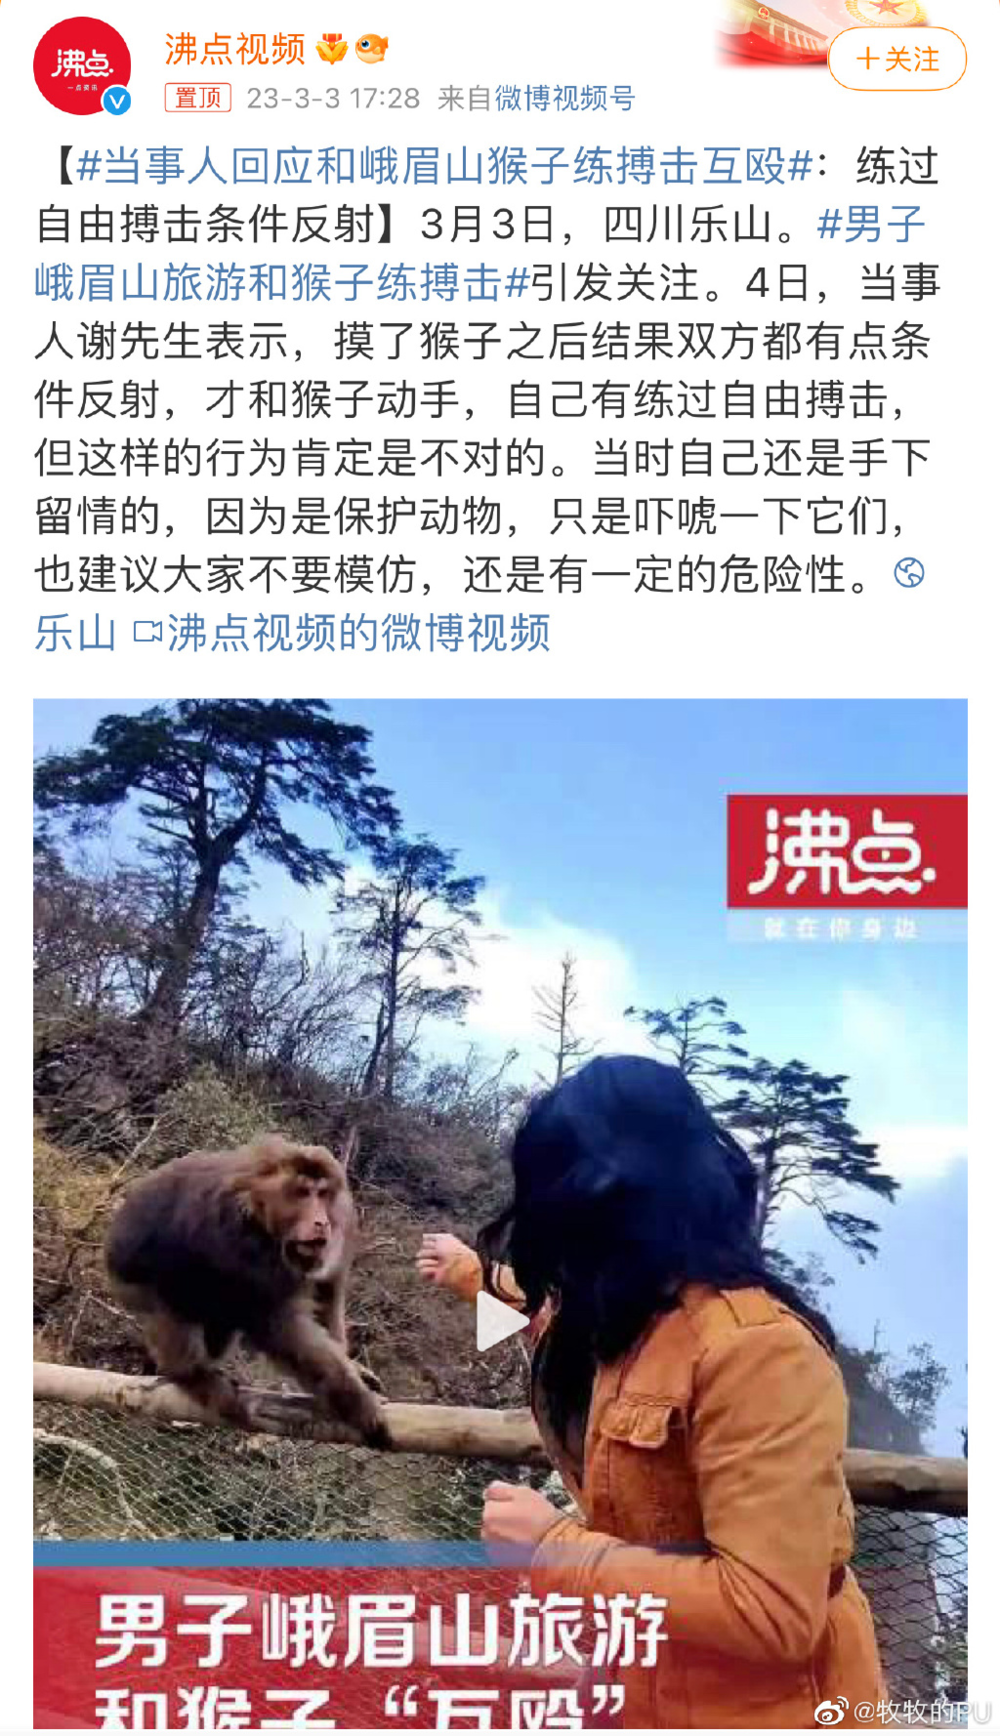 人傻到什么程度，才会和猴子互搏？峨眉山藏酋猴是国家二级保护动物，打输住院，打赢坐牢，前往别学。/图源自微博<br>